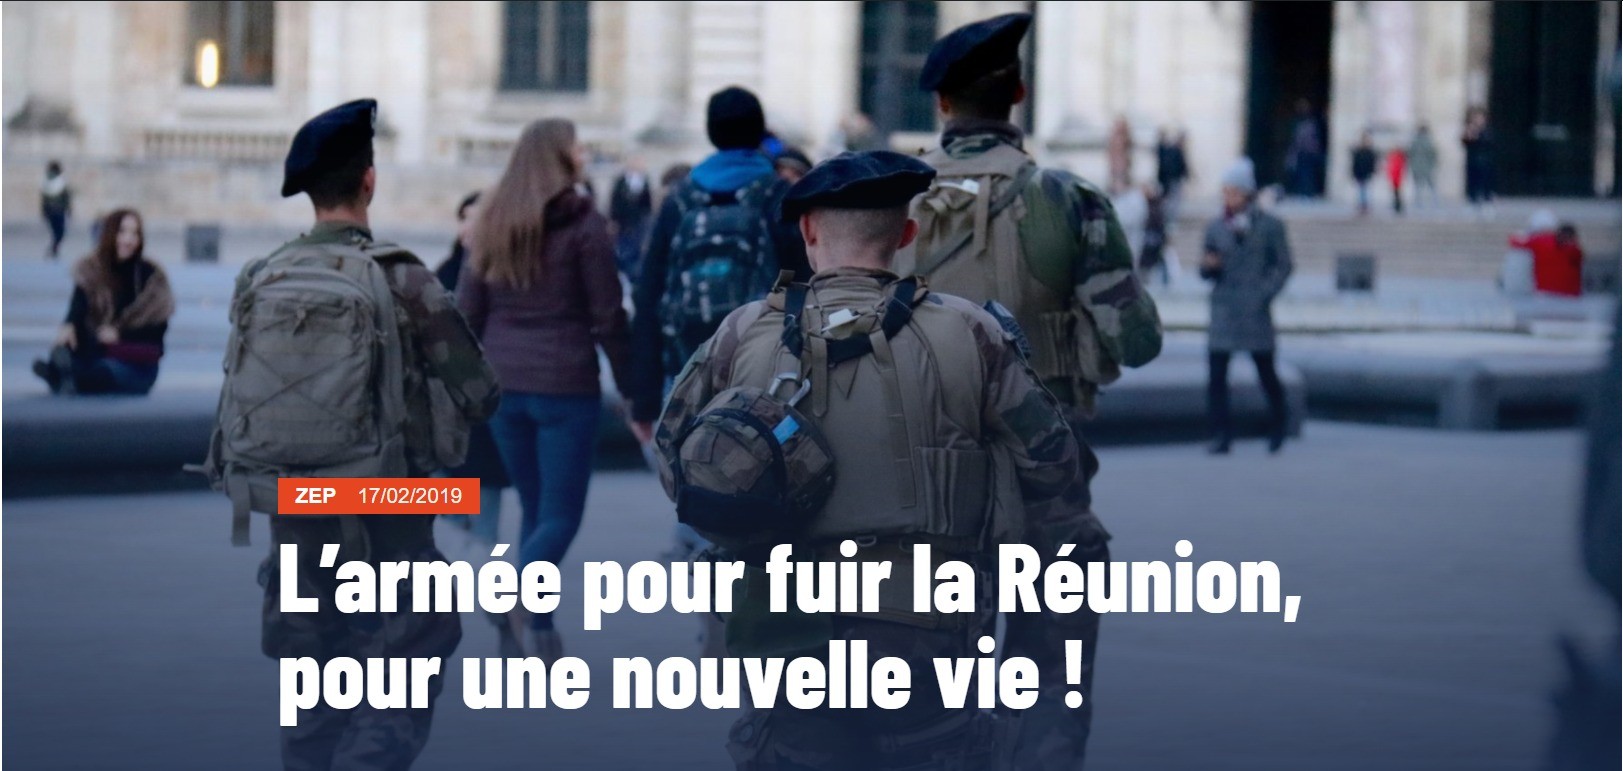 Capture d'écran de l'article "L'armée pour fuir la Réunion, pour une nouvelle vie !"